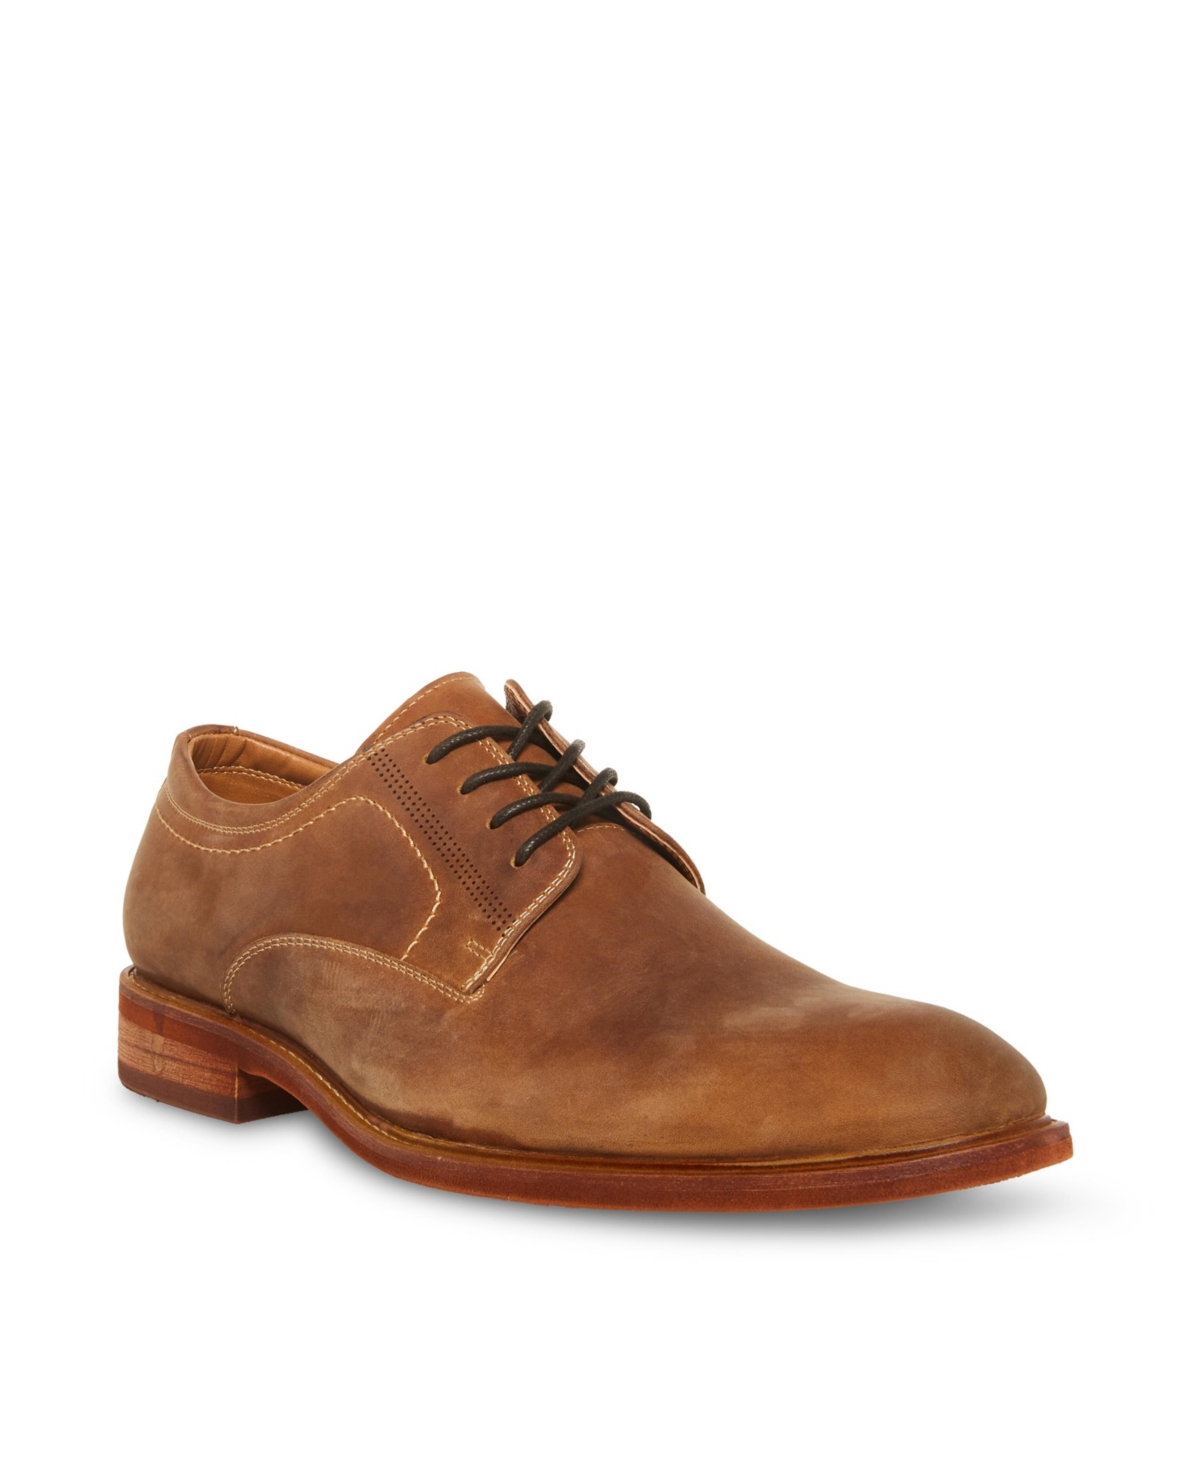 Men's Kacion Oxford Shoes - Tan